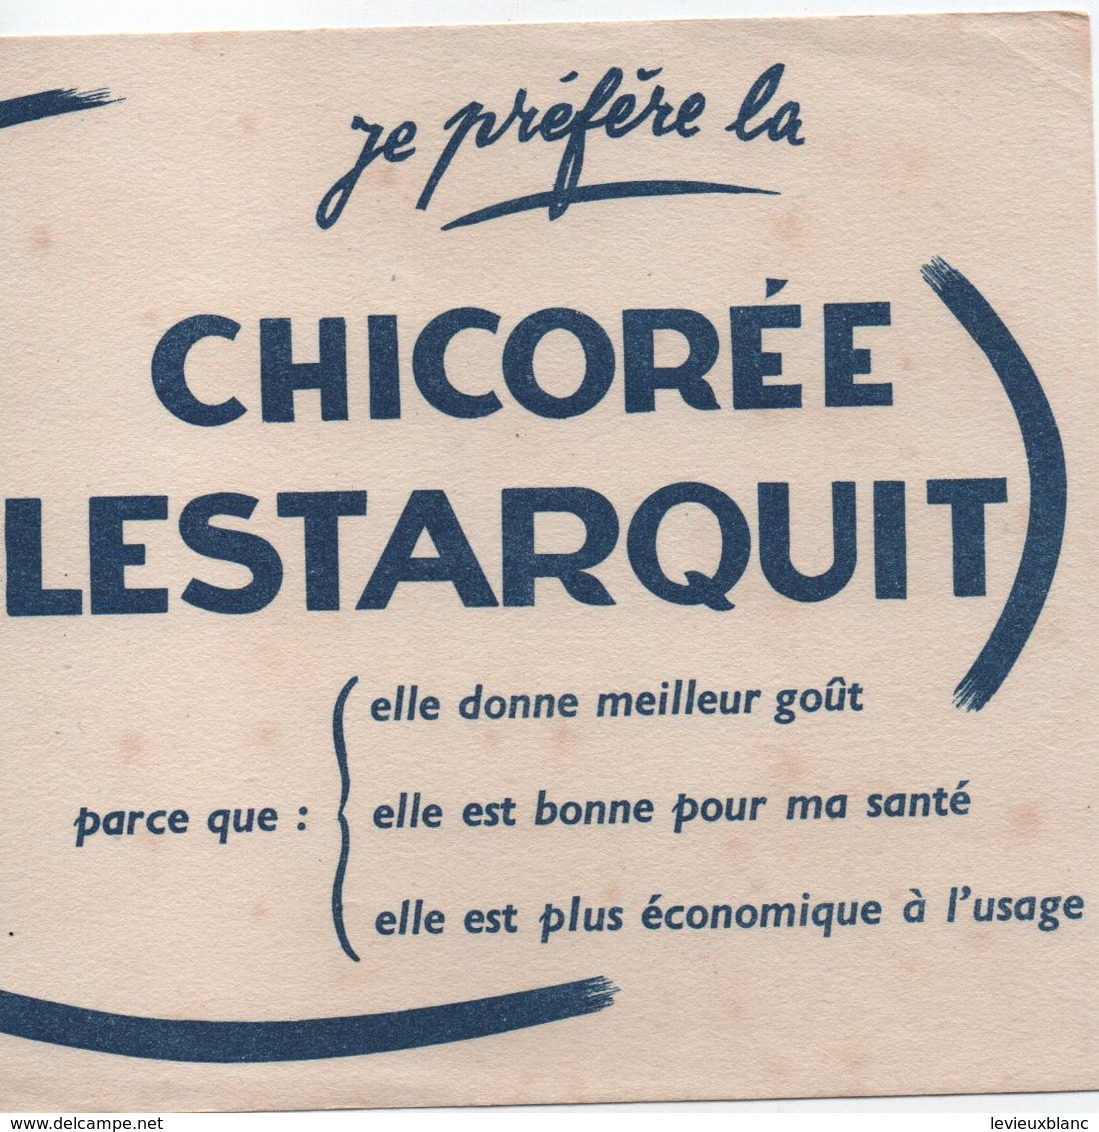 Buvard Publicitaire Ancien/Chicorée/ Chicorée LESTARQUIT /Je Préfère.../Vers 1950-60   BUV493 - Coffee & Tea